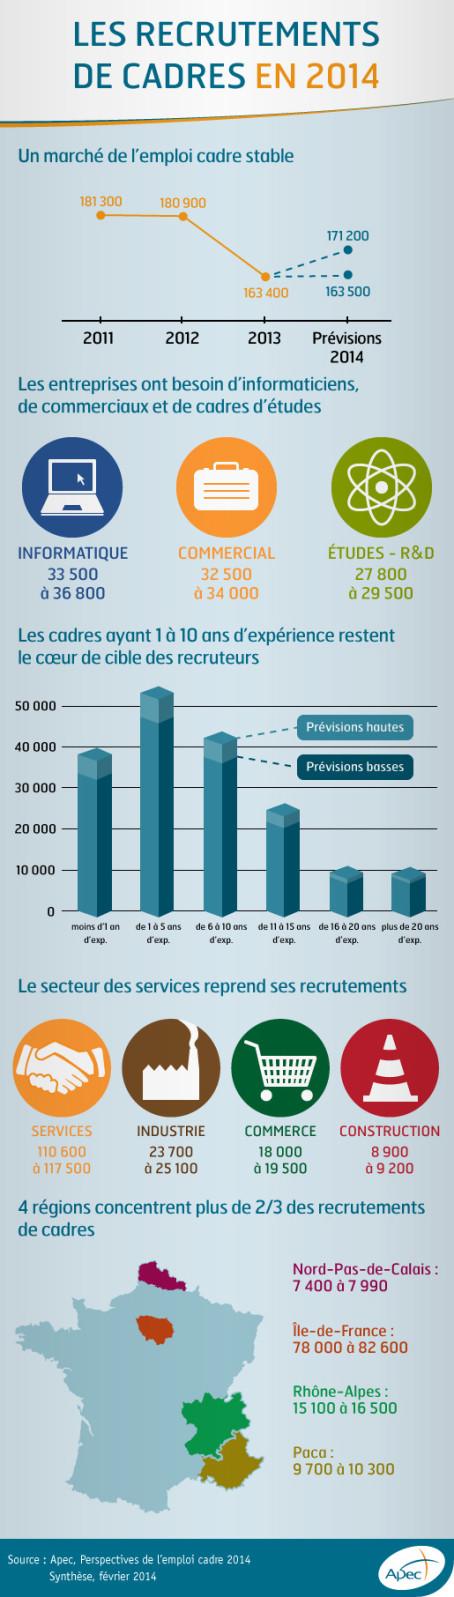 Infographie-Perspectives-de-l-emploi-cadre-2014 (1)